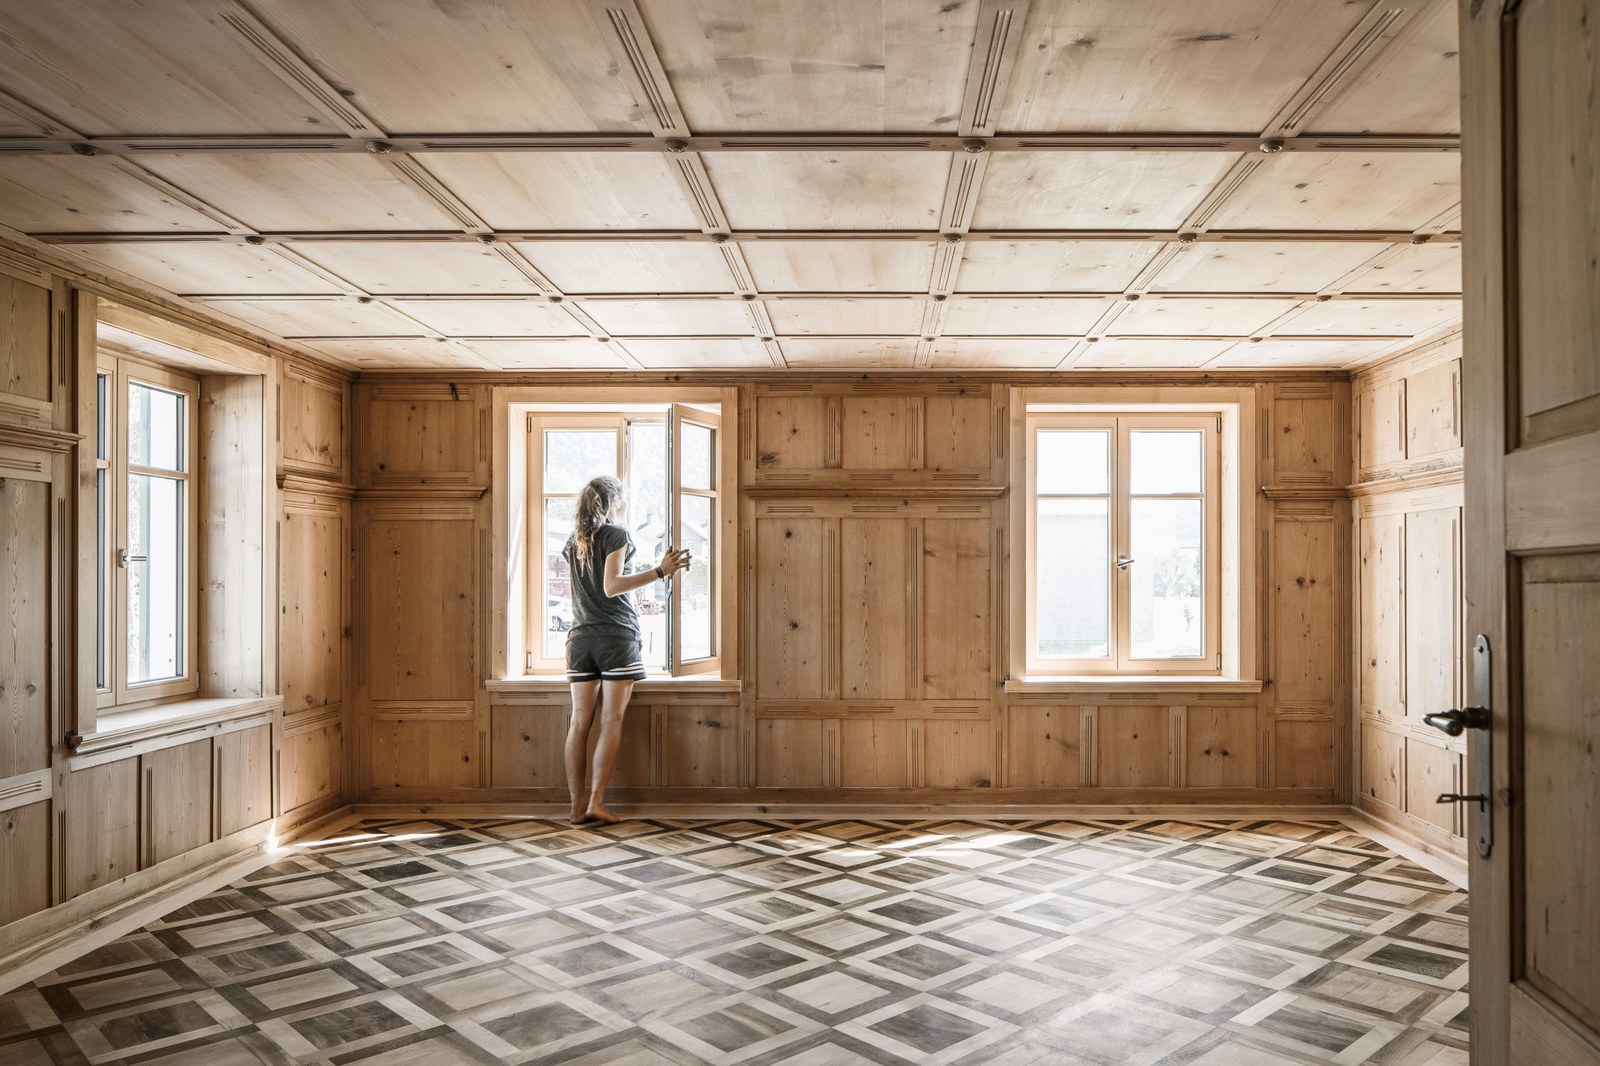 Haus Mitanand Bezau nach der Sanierung. Blick in einen Innenraum mit sanierten Parkettboden, Wand und Decken Kassetten. Bildachweis: Albrecht Schnabel